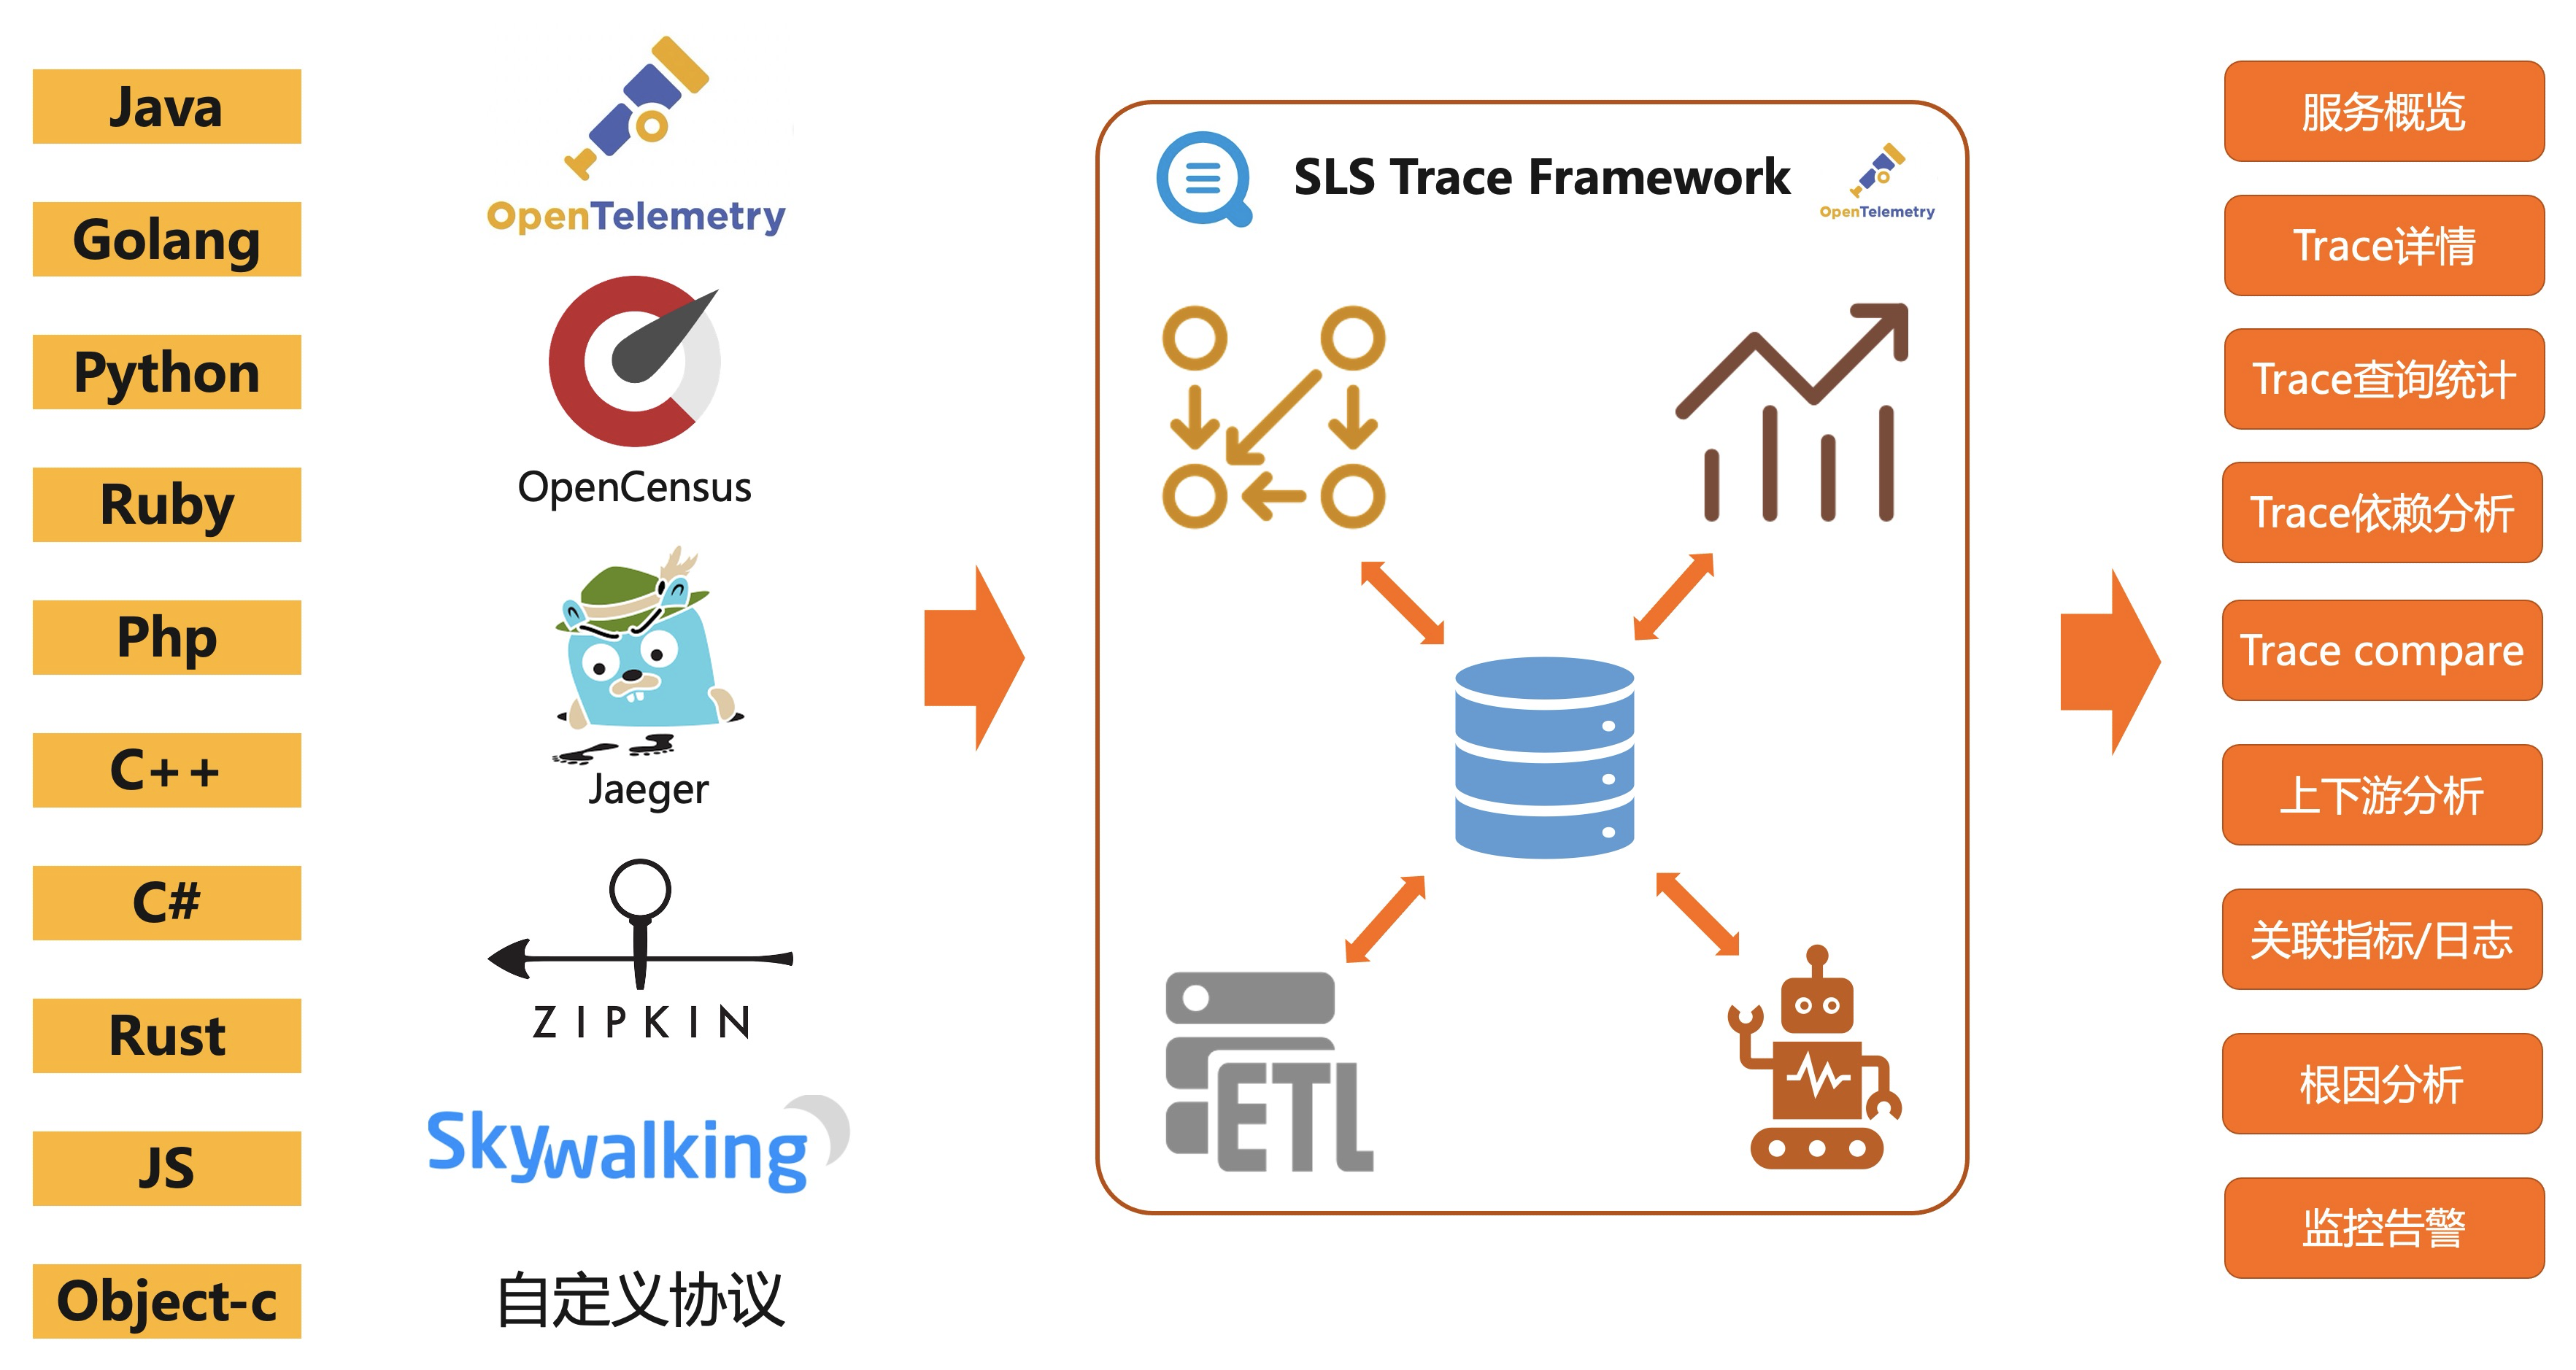 SLS Trace架构图